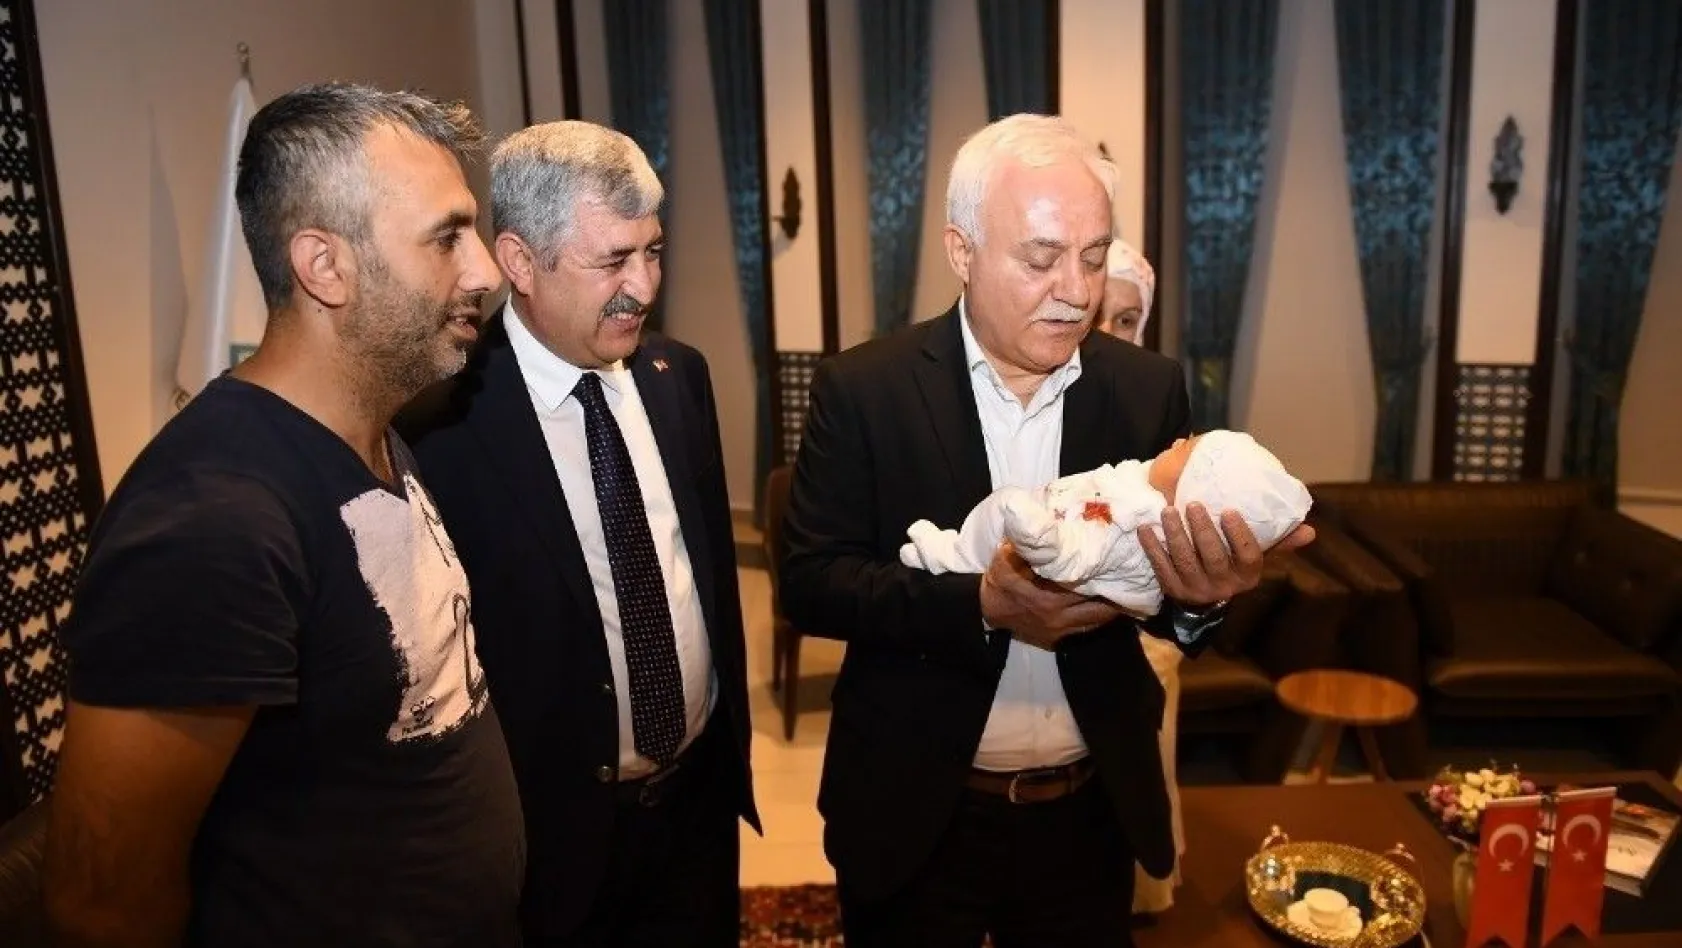 Prof. Dr. Hatipoğlu yeni doğan bebeğin ismini koydu
